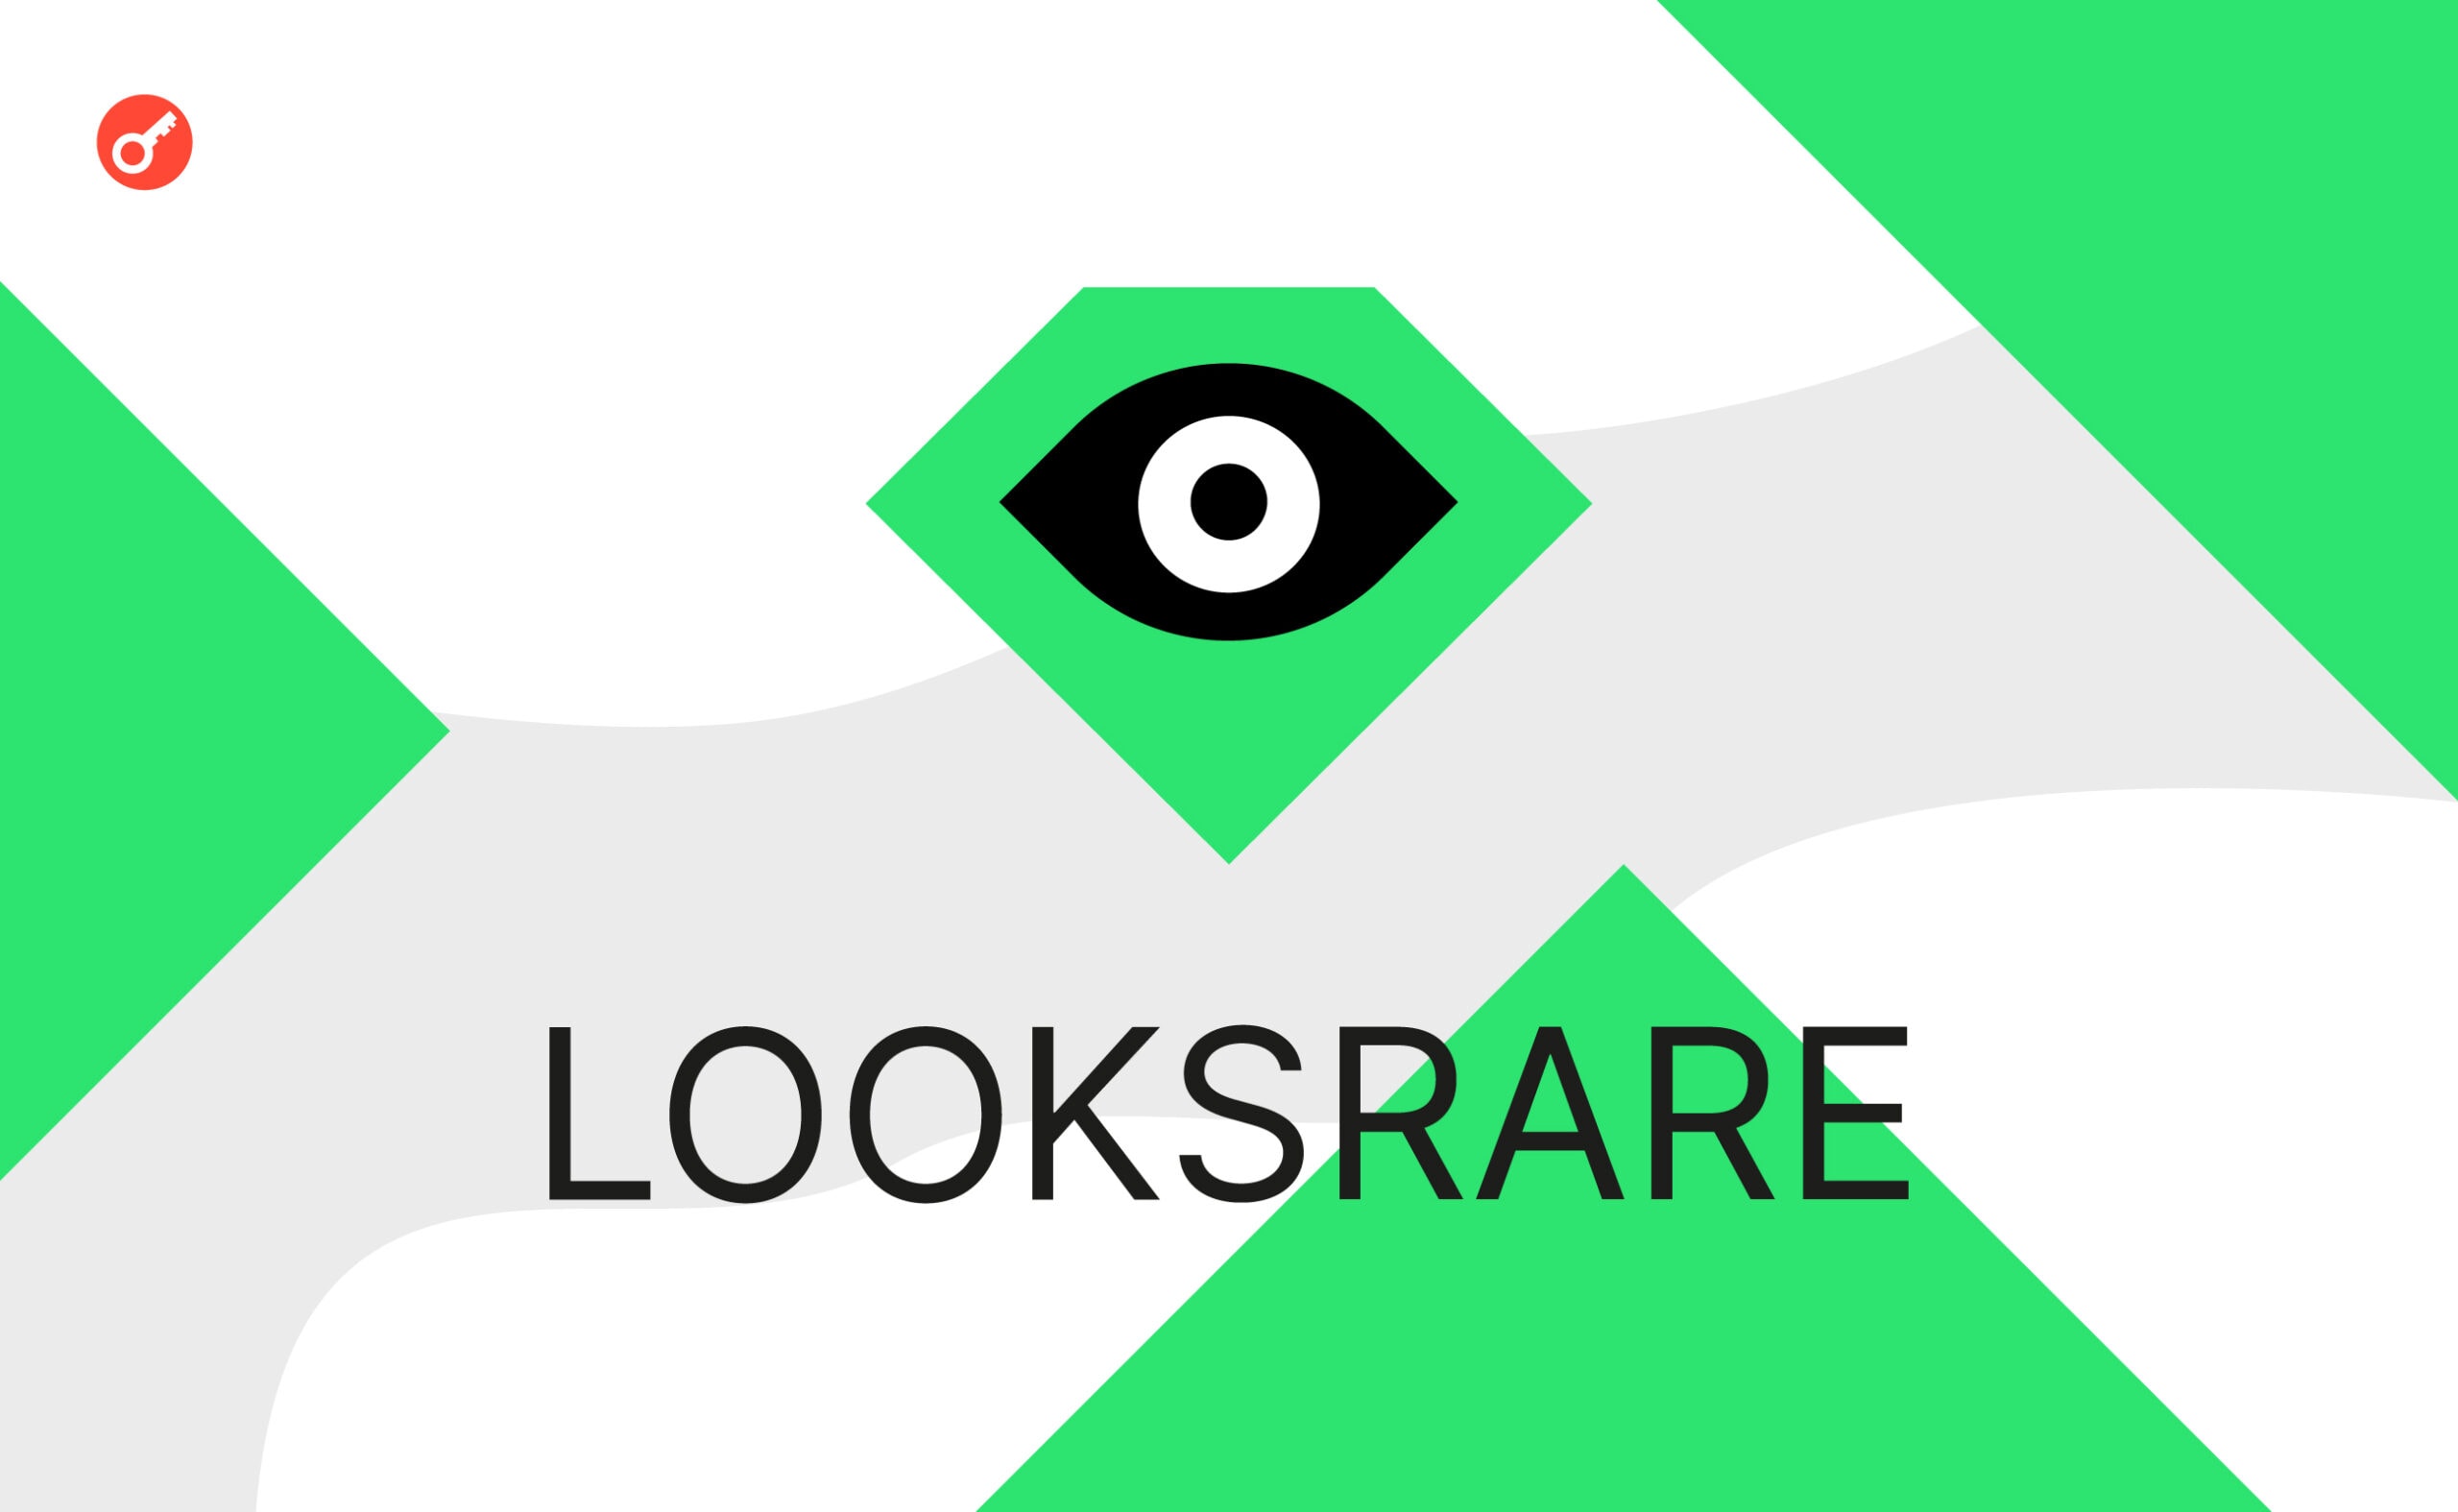 LooksRare обновили платформу: новые опции и ниже комиссии. Заглавный коллаж новости.